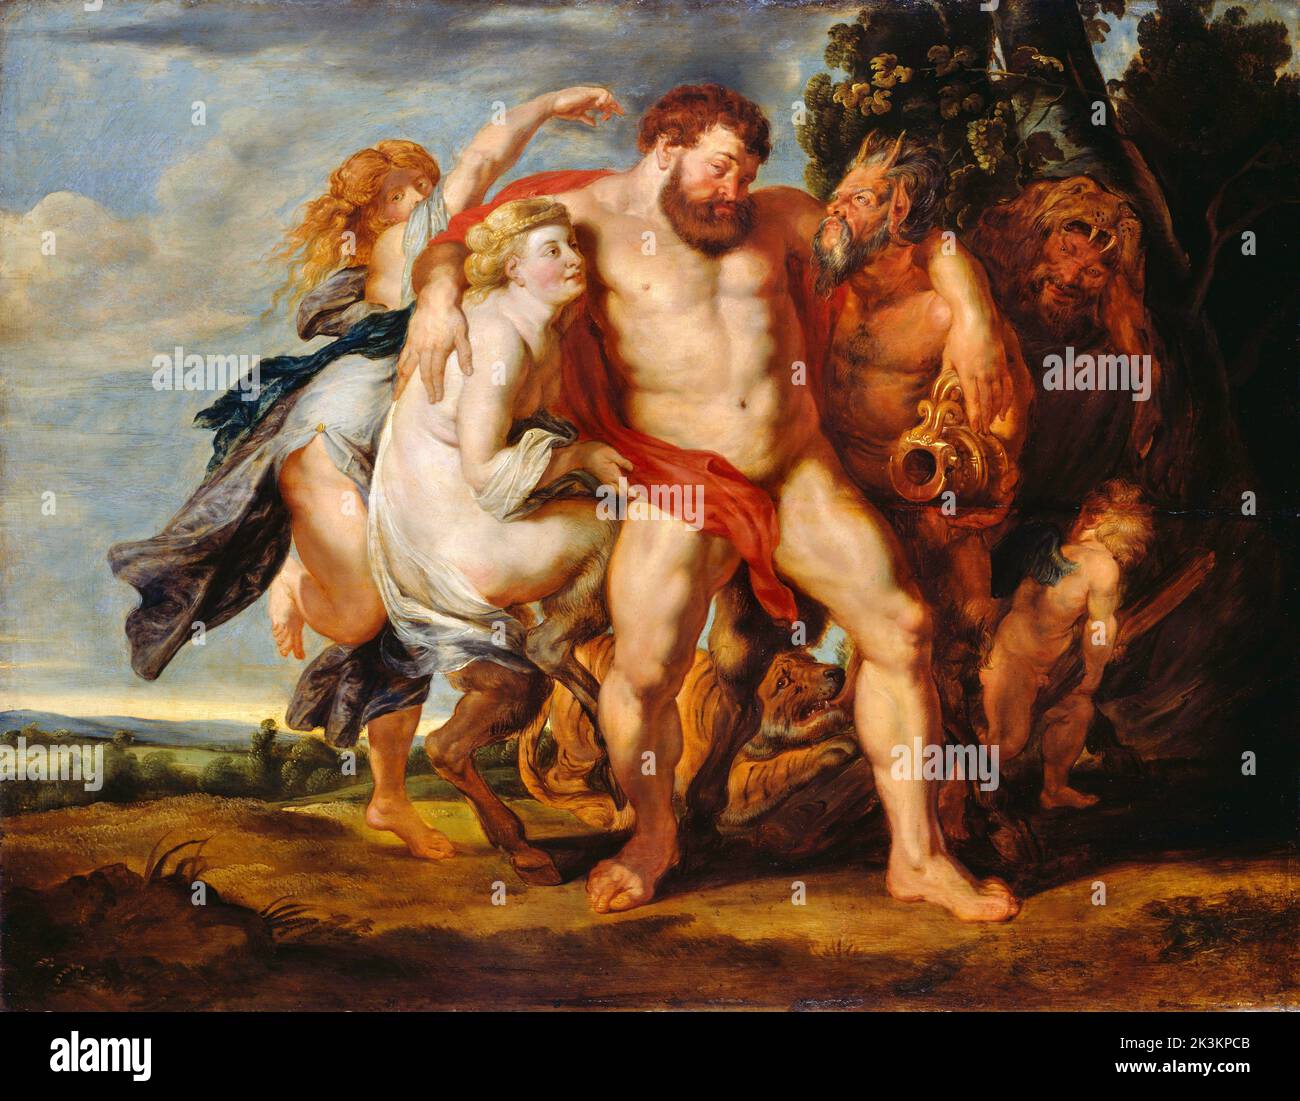 Der betrunkene Herkules von der Werkstatt von Peter Paul Rubens (1577-1640), Öl auf Leinwand, c. 1615-20 Stockfoto